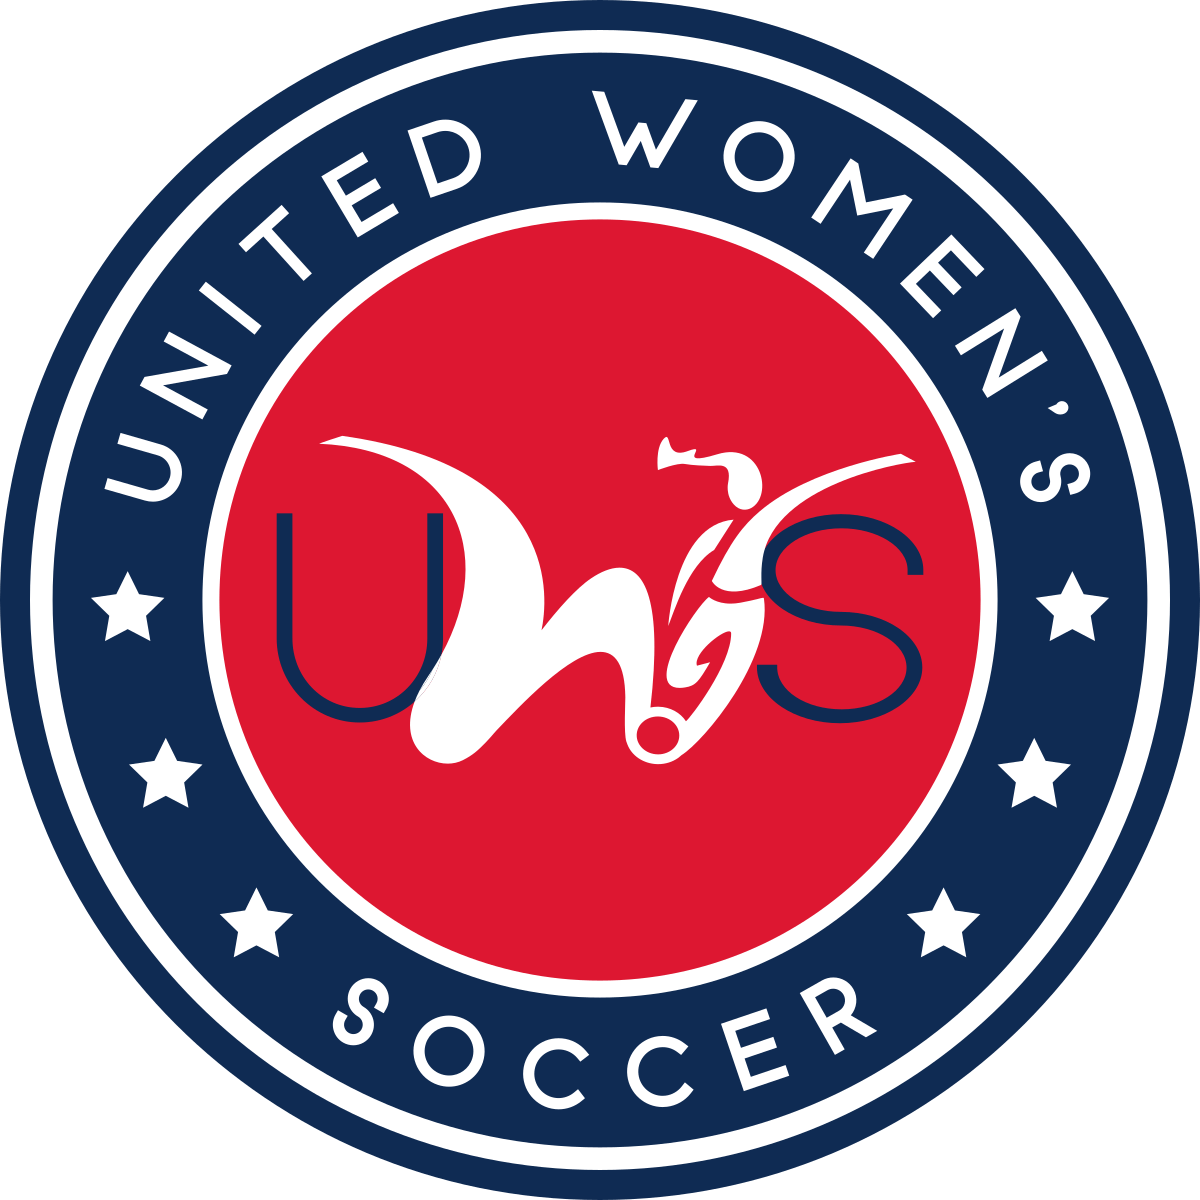 Blue Circle Soccer Logo - United Women's Soccer